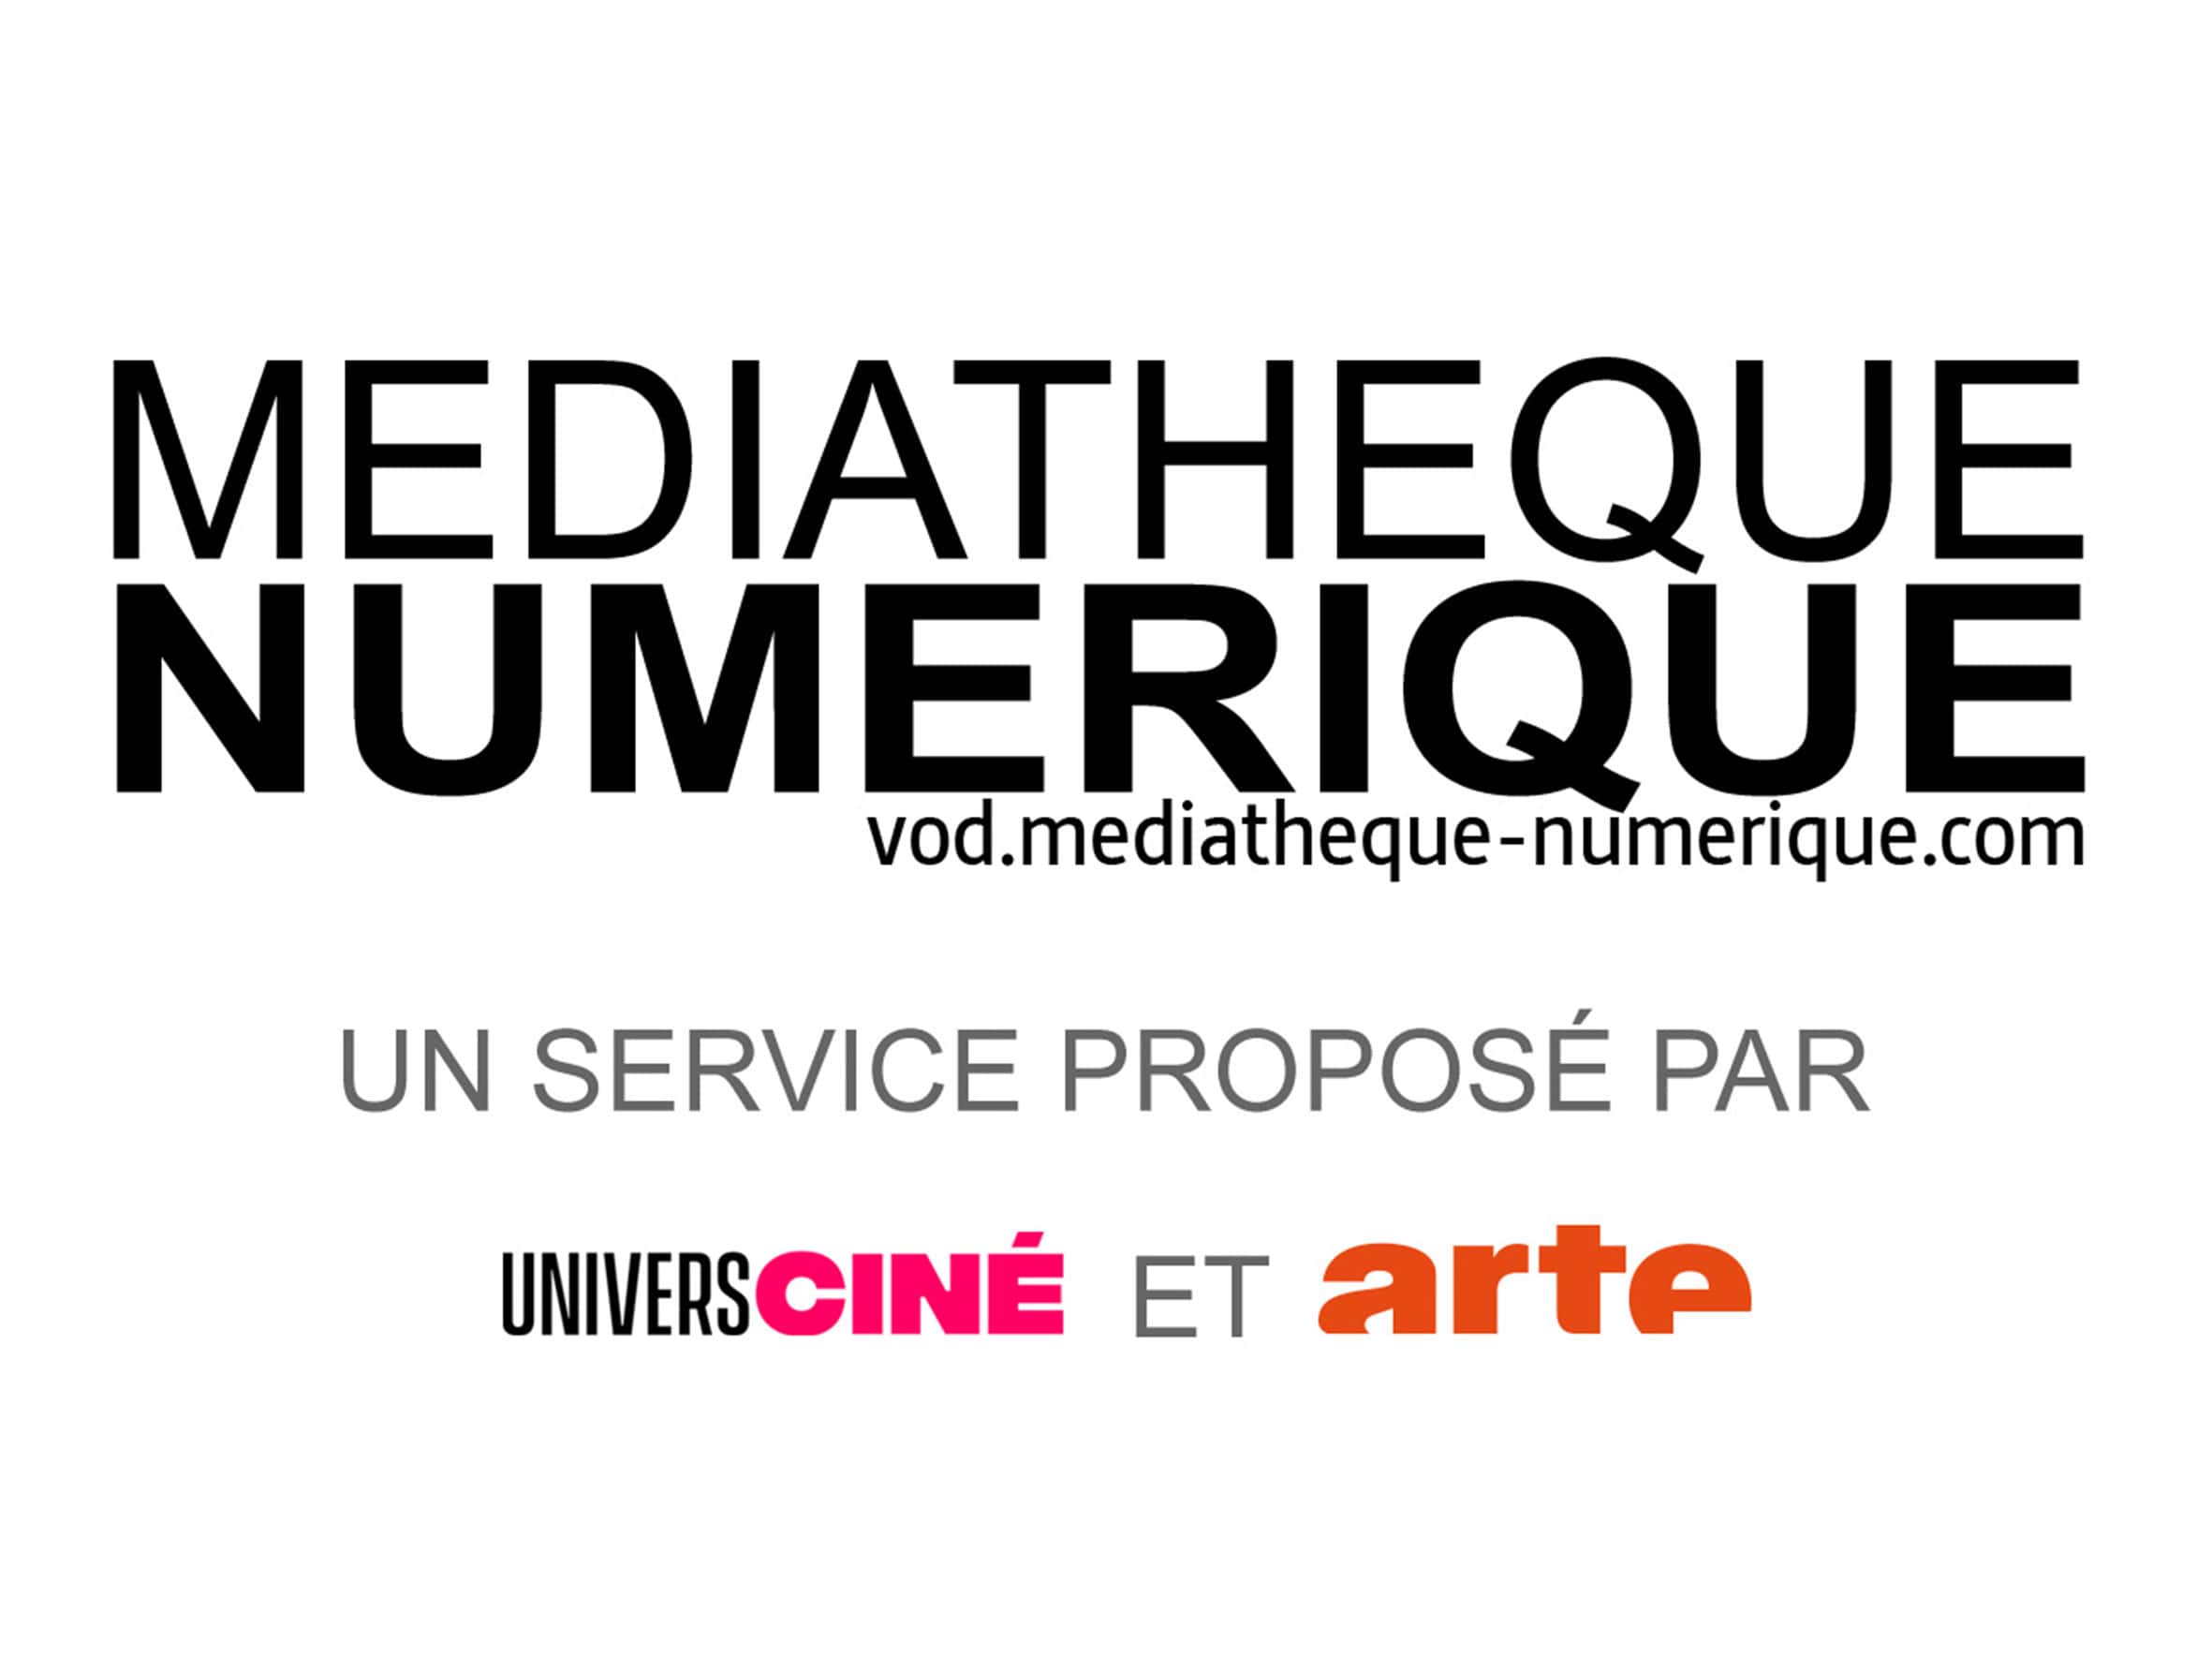 mediatheque-numerique-min.jpg